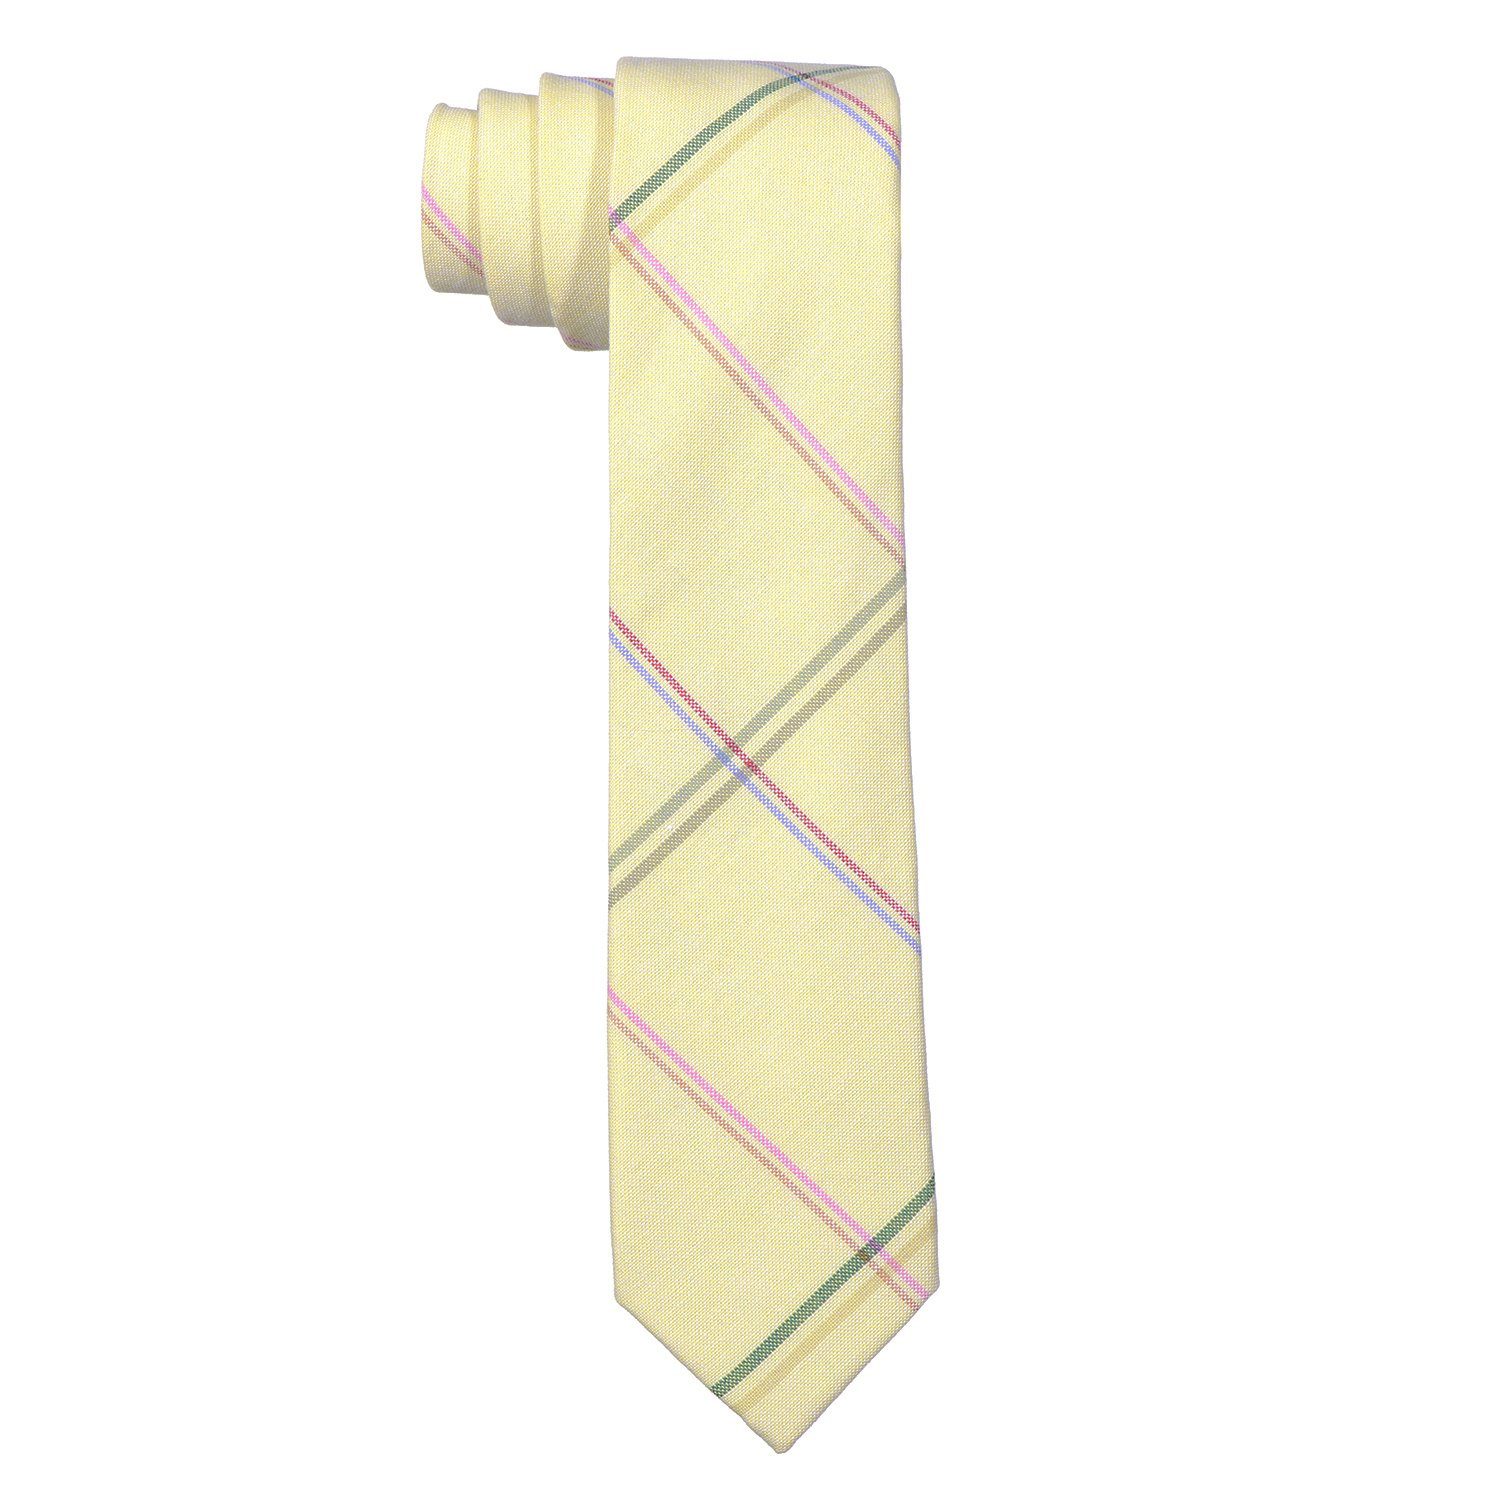 1x pastell-gelb gestreift, DonDon 6 Veranstaltungen gestreift Krawatte Krawatte (Packung, 1-St., oder festliche oder Büro Baumwolle, für Herren kariert Krawatte) cm